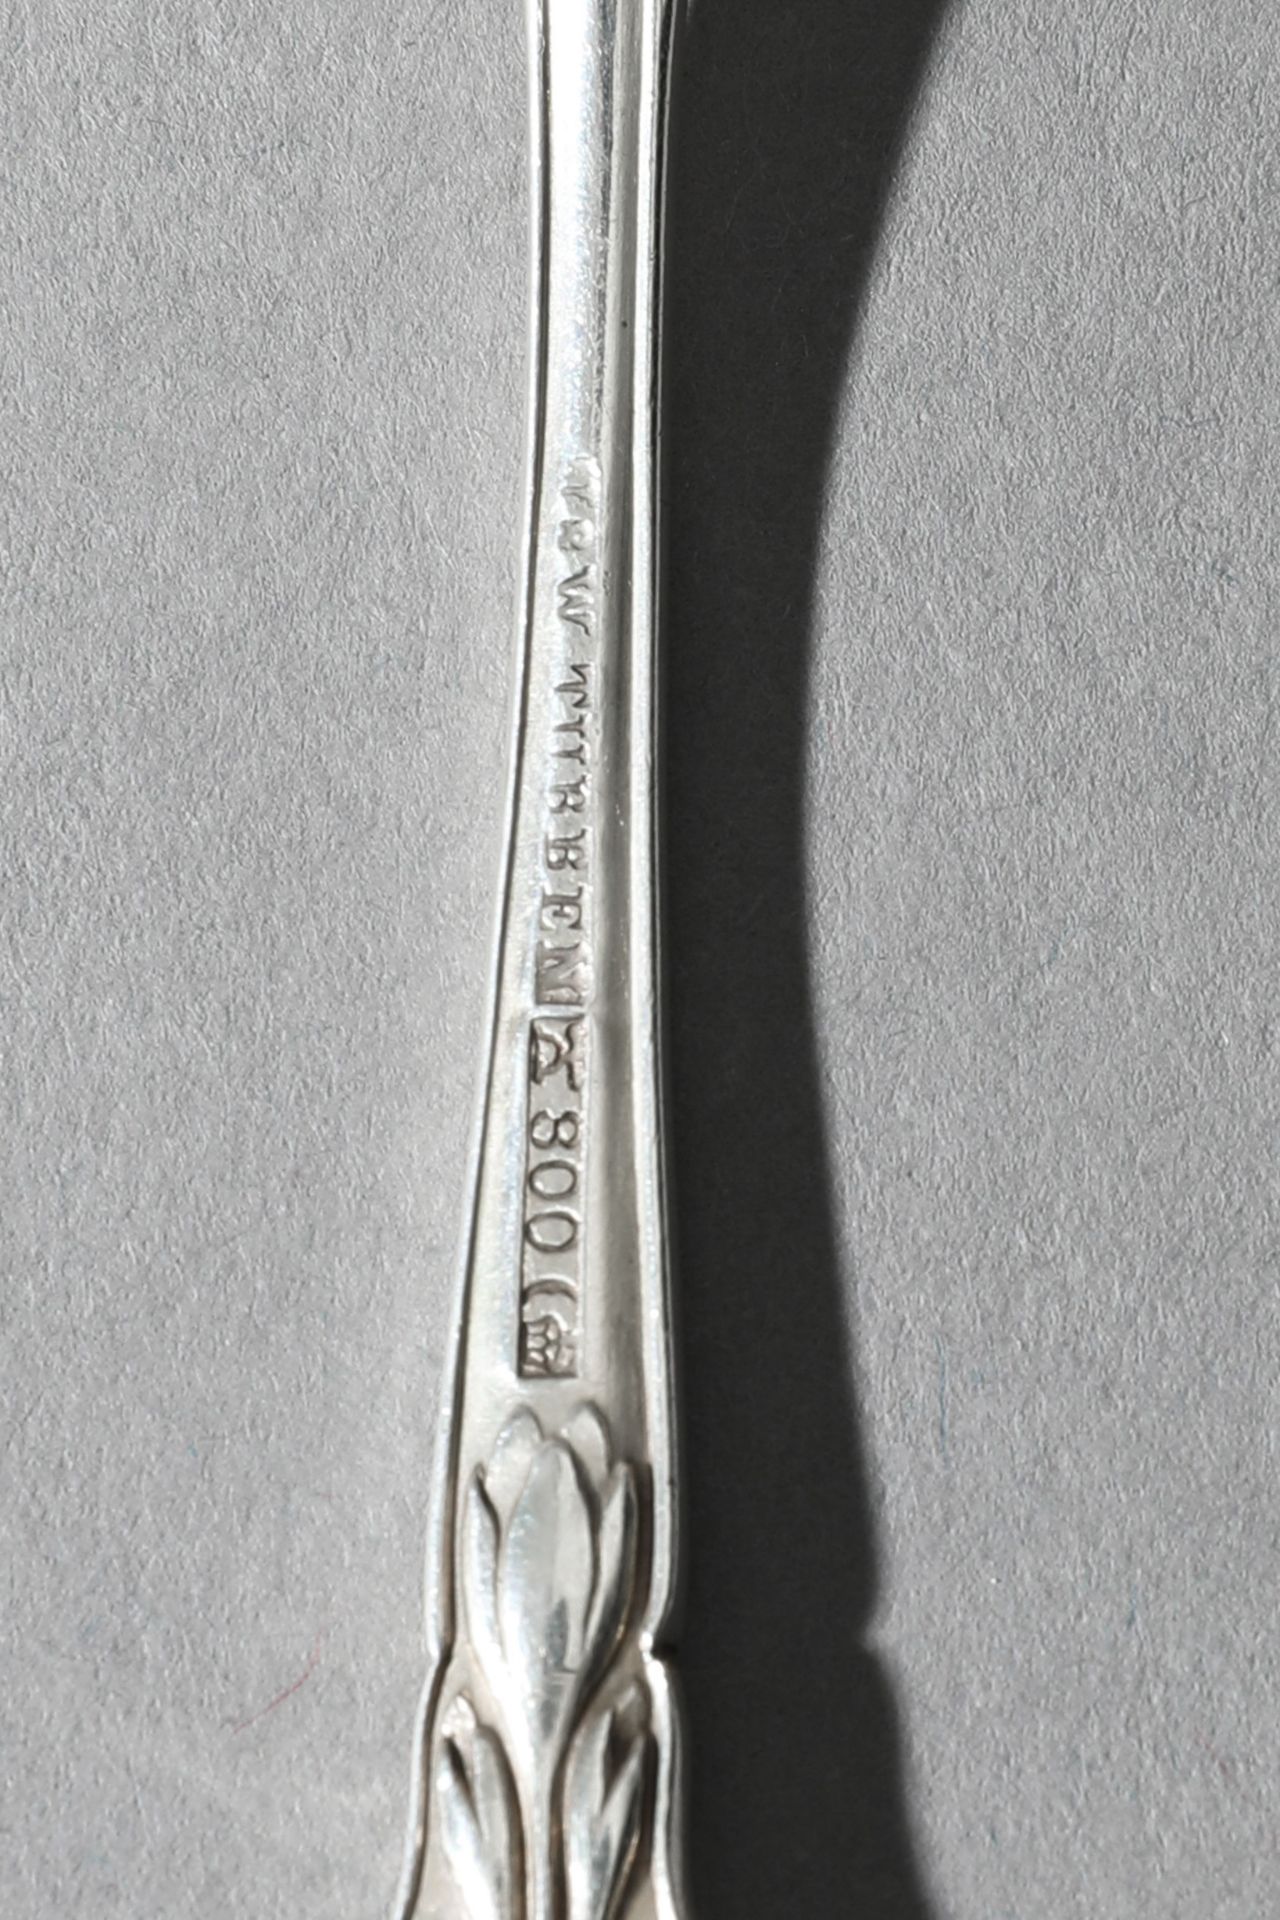 Heinrich Vogeler, Wilkens, Silver Fish Cutlery and Cutlery Herbstzeitlose, 48 pieces - Image 6 of 7